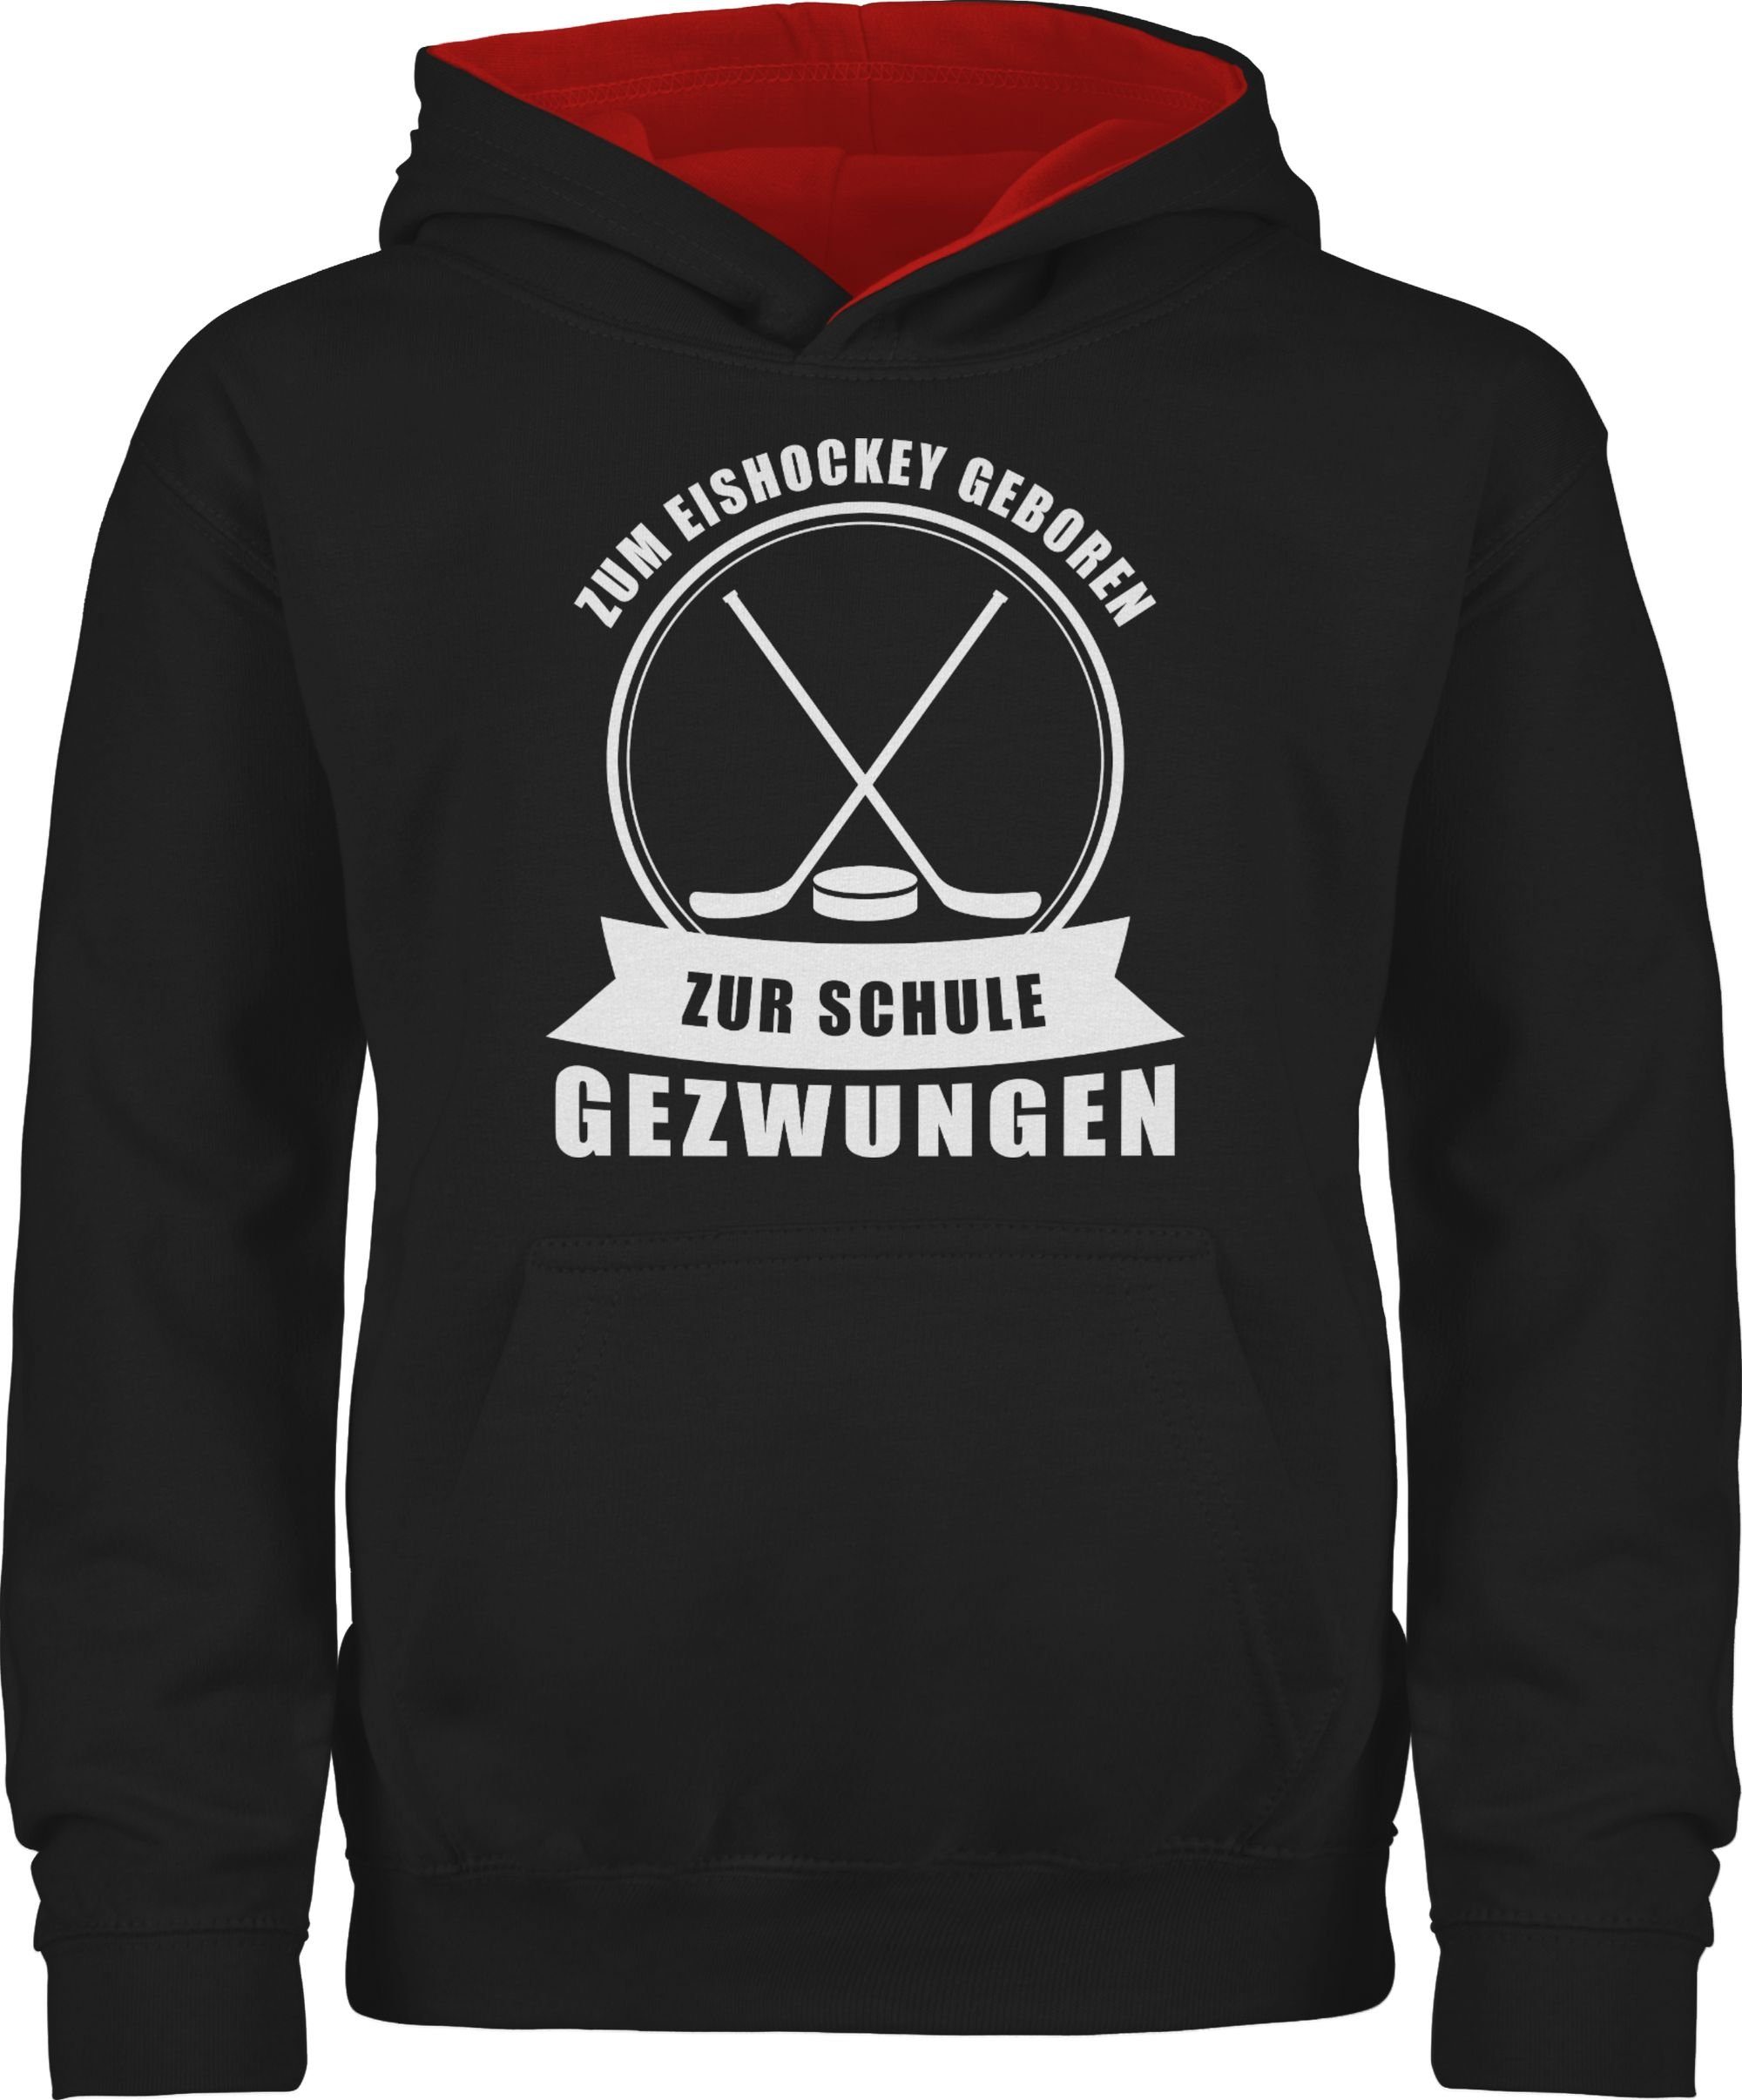 Shirtracer Hoodie Zum Eishockey geboren. Zur Schule gezwungen Kinder Sport Kleidung 1 Schwarz/Rot